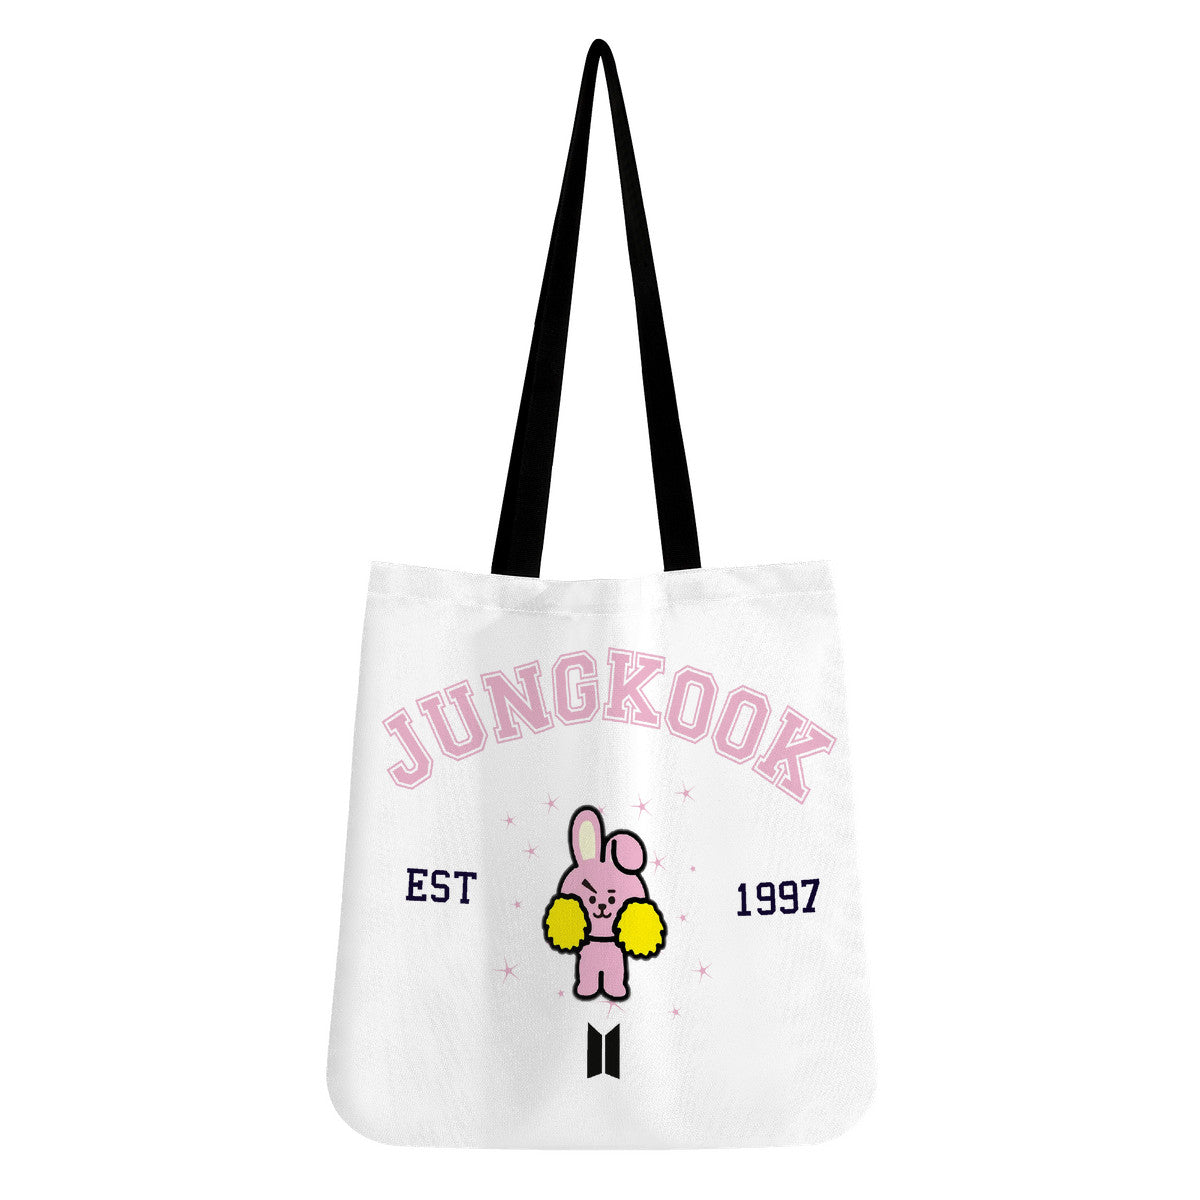 Copy of BTS Jungkook Tote bag BT21 Cooky Bag